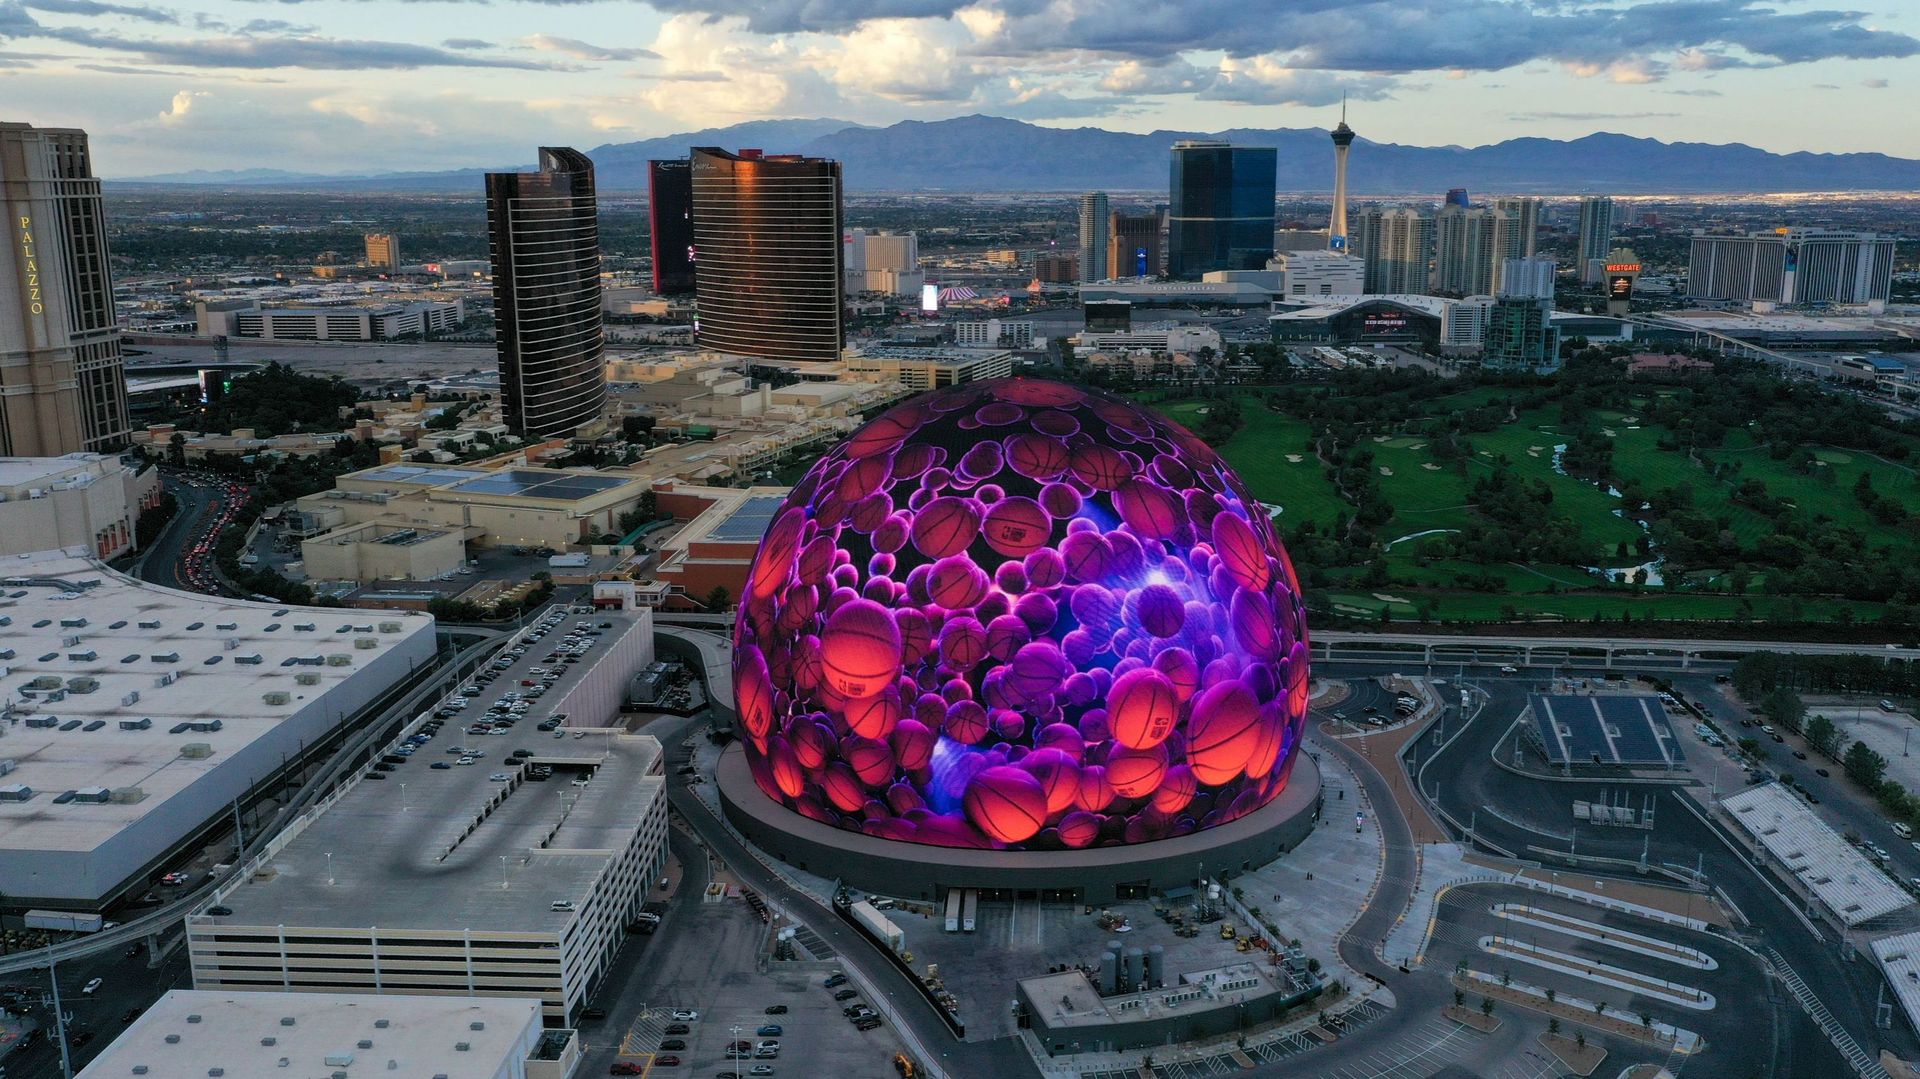 Secondo quanto riferito, Las Vegas Sphere ha perso 98,4 milioni di dollari